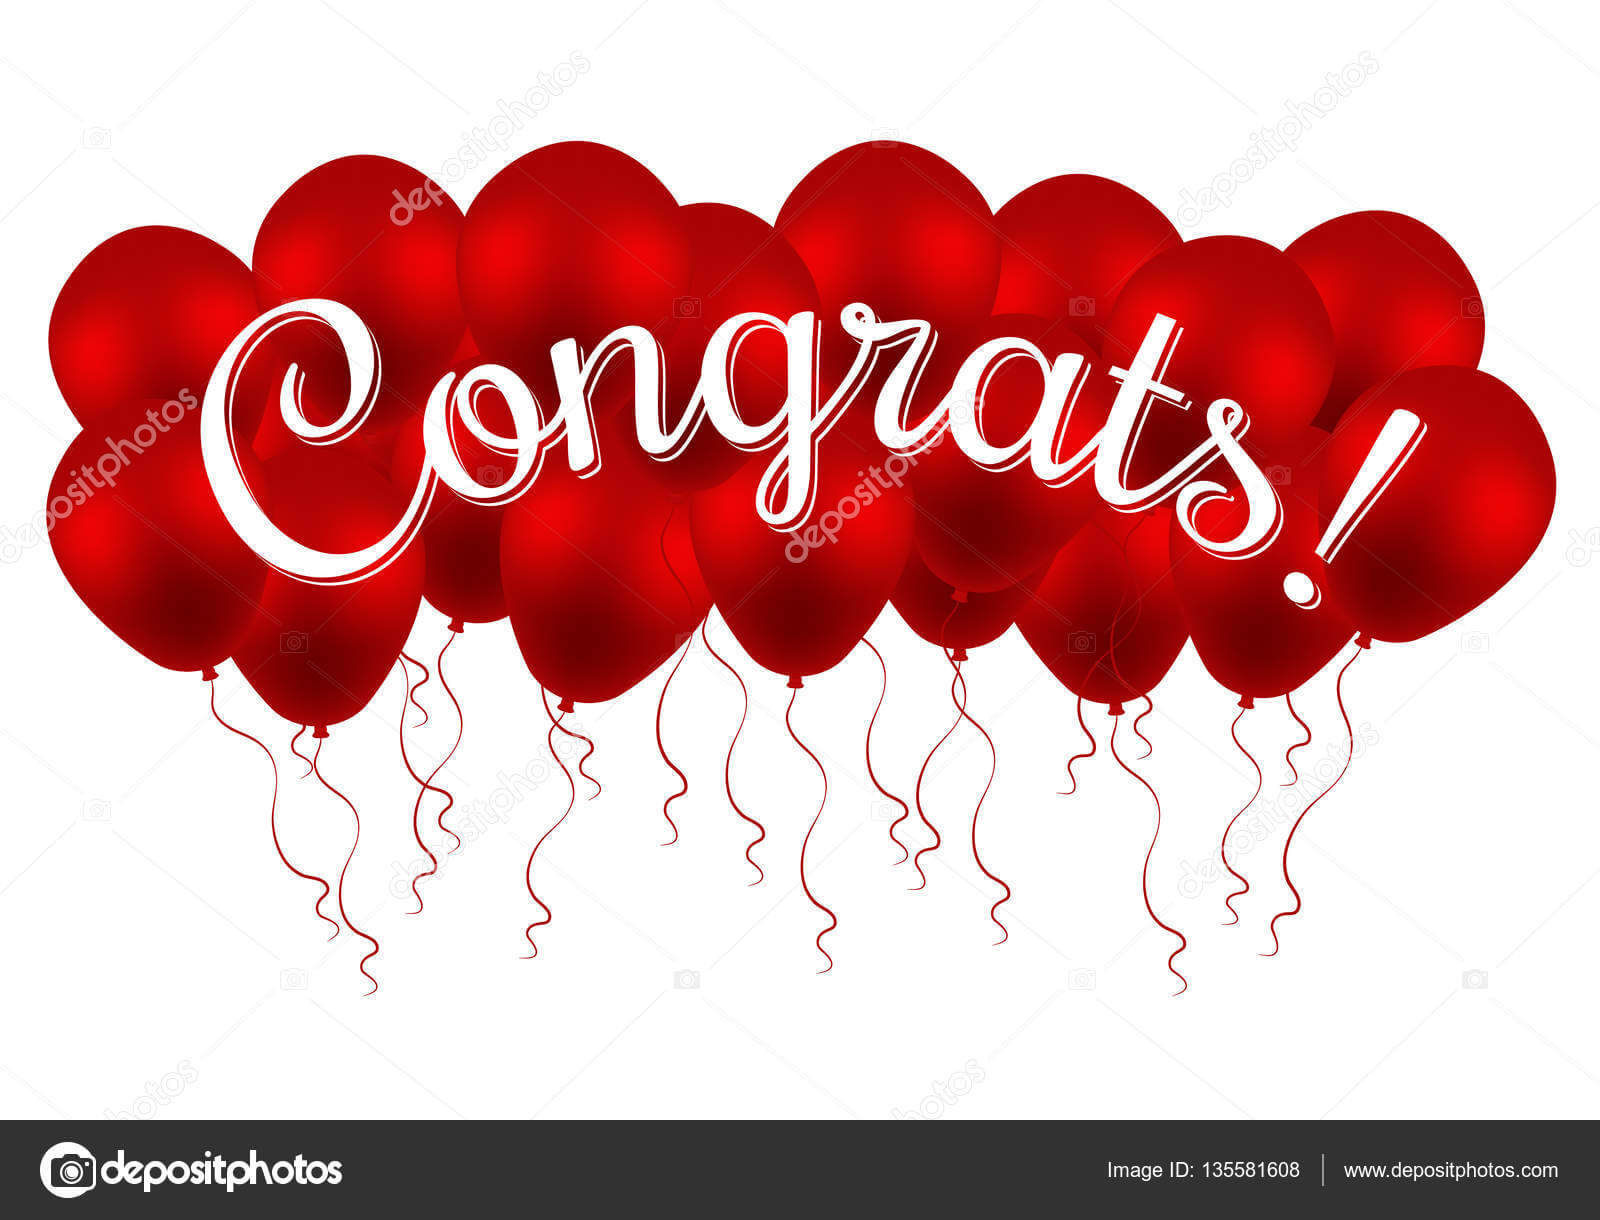 Congrats! Congratulations Vector Banner With Balloons And Pertaining To Congratulations Banner Template